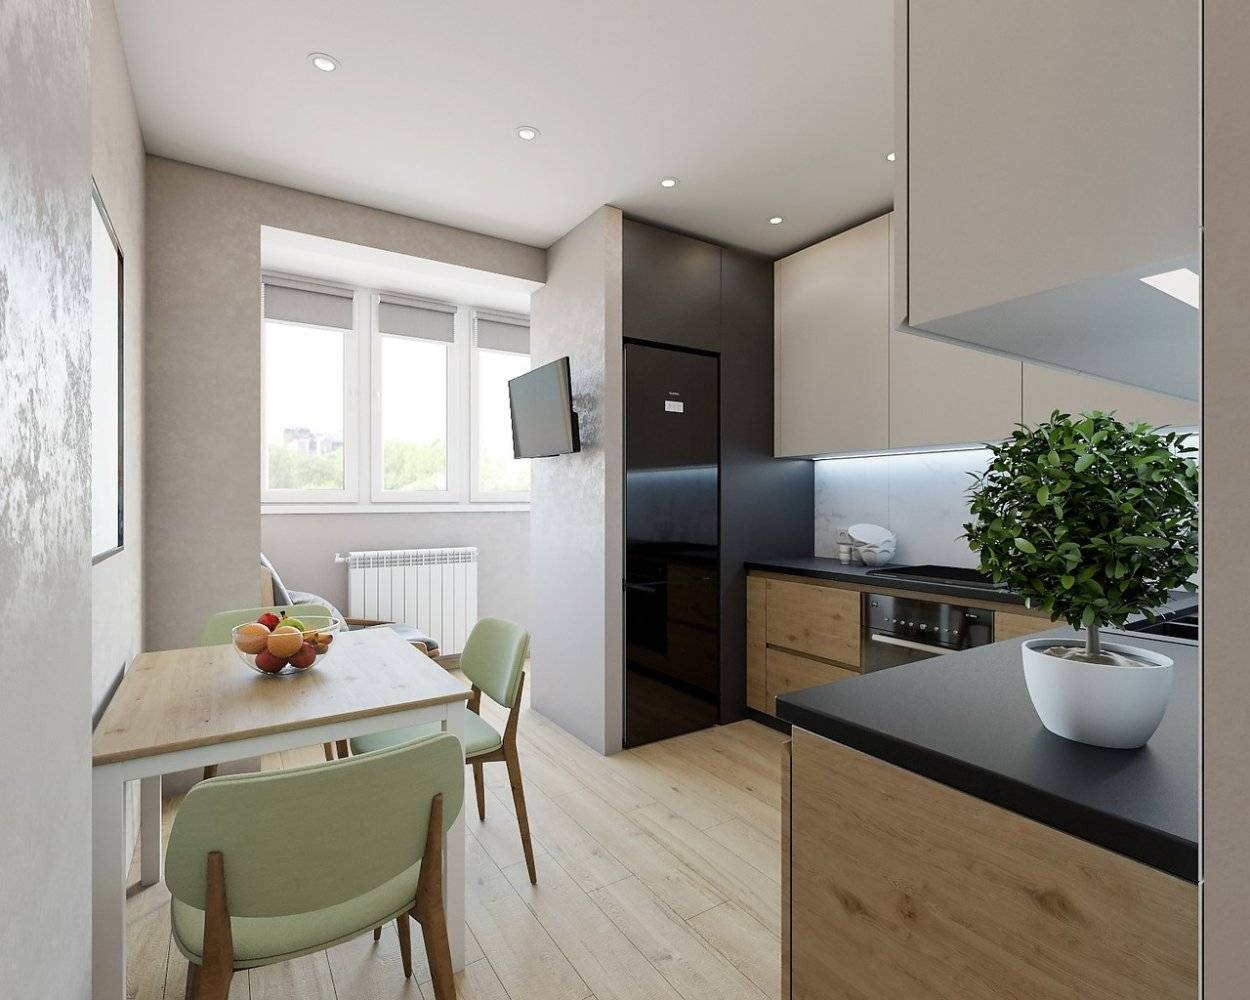 Дизайн кухни 9 кв. м с фото 2022 года: новые тенденции, стили, мебель, обои, потолок, новинки интерьера